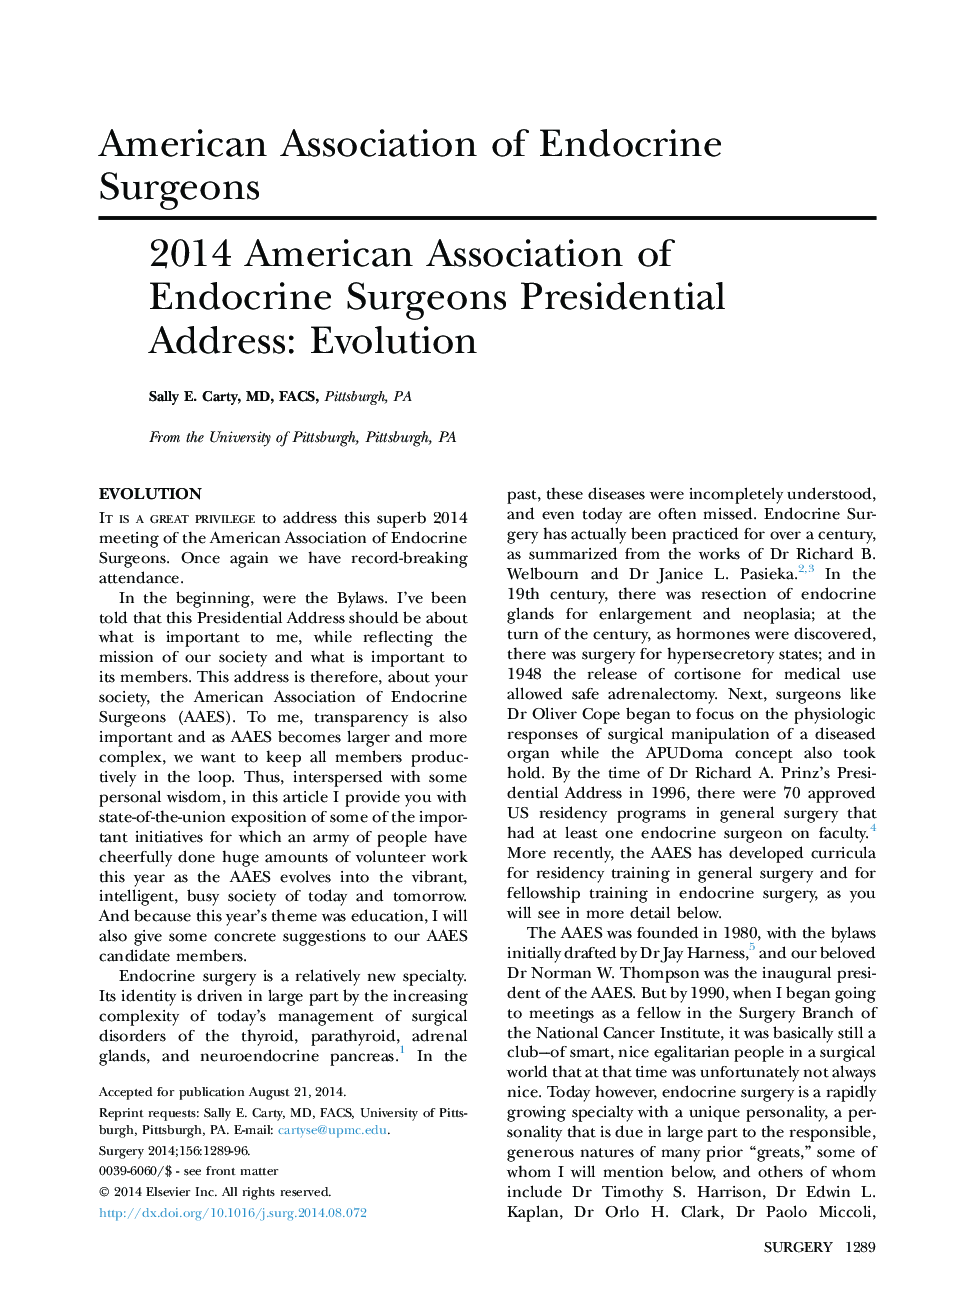 2014 انجمن آمریکایی جراحان غدد درون ریز آدرس های ریاست جمهوری: تکامل 